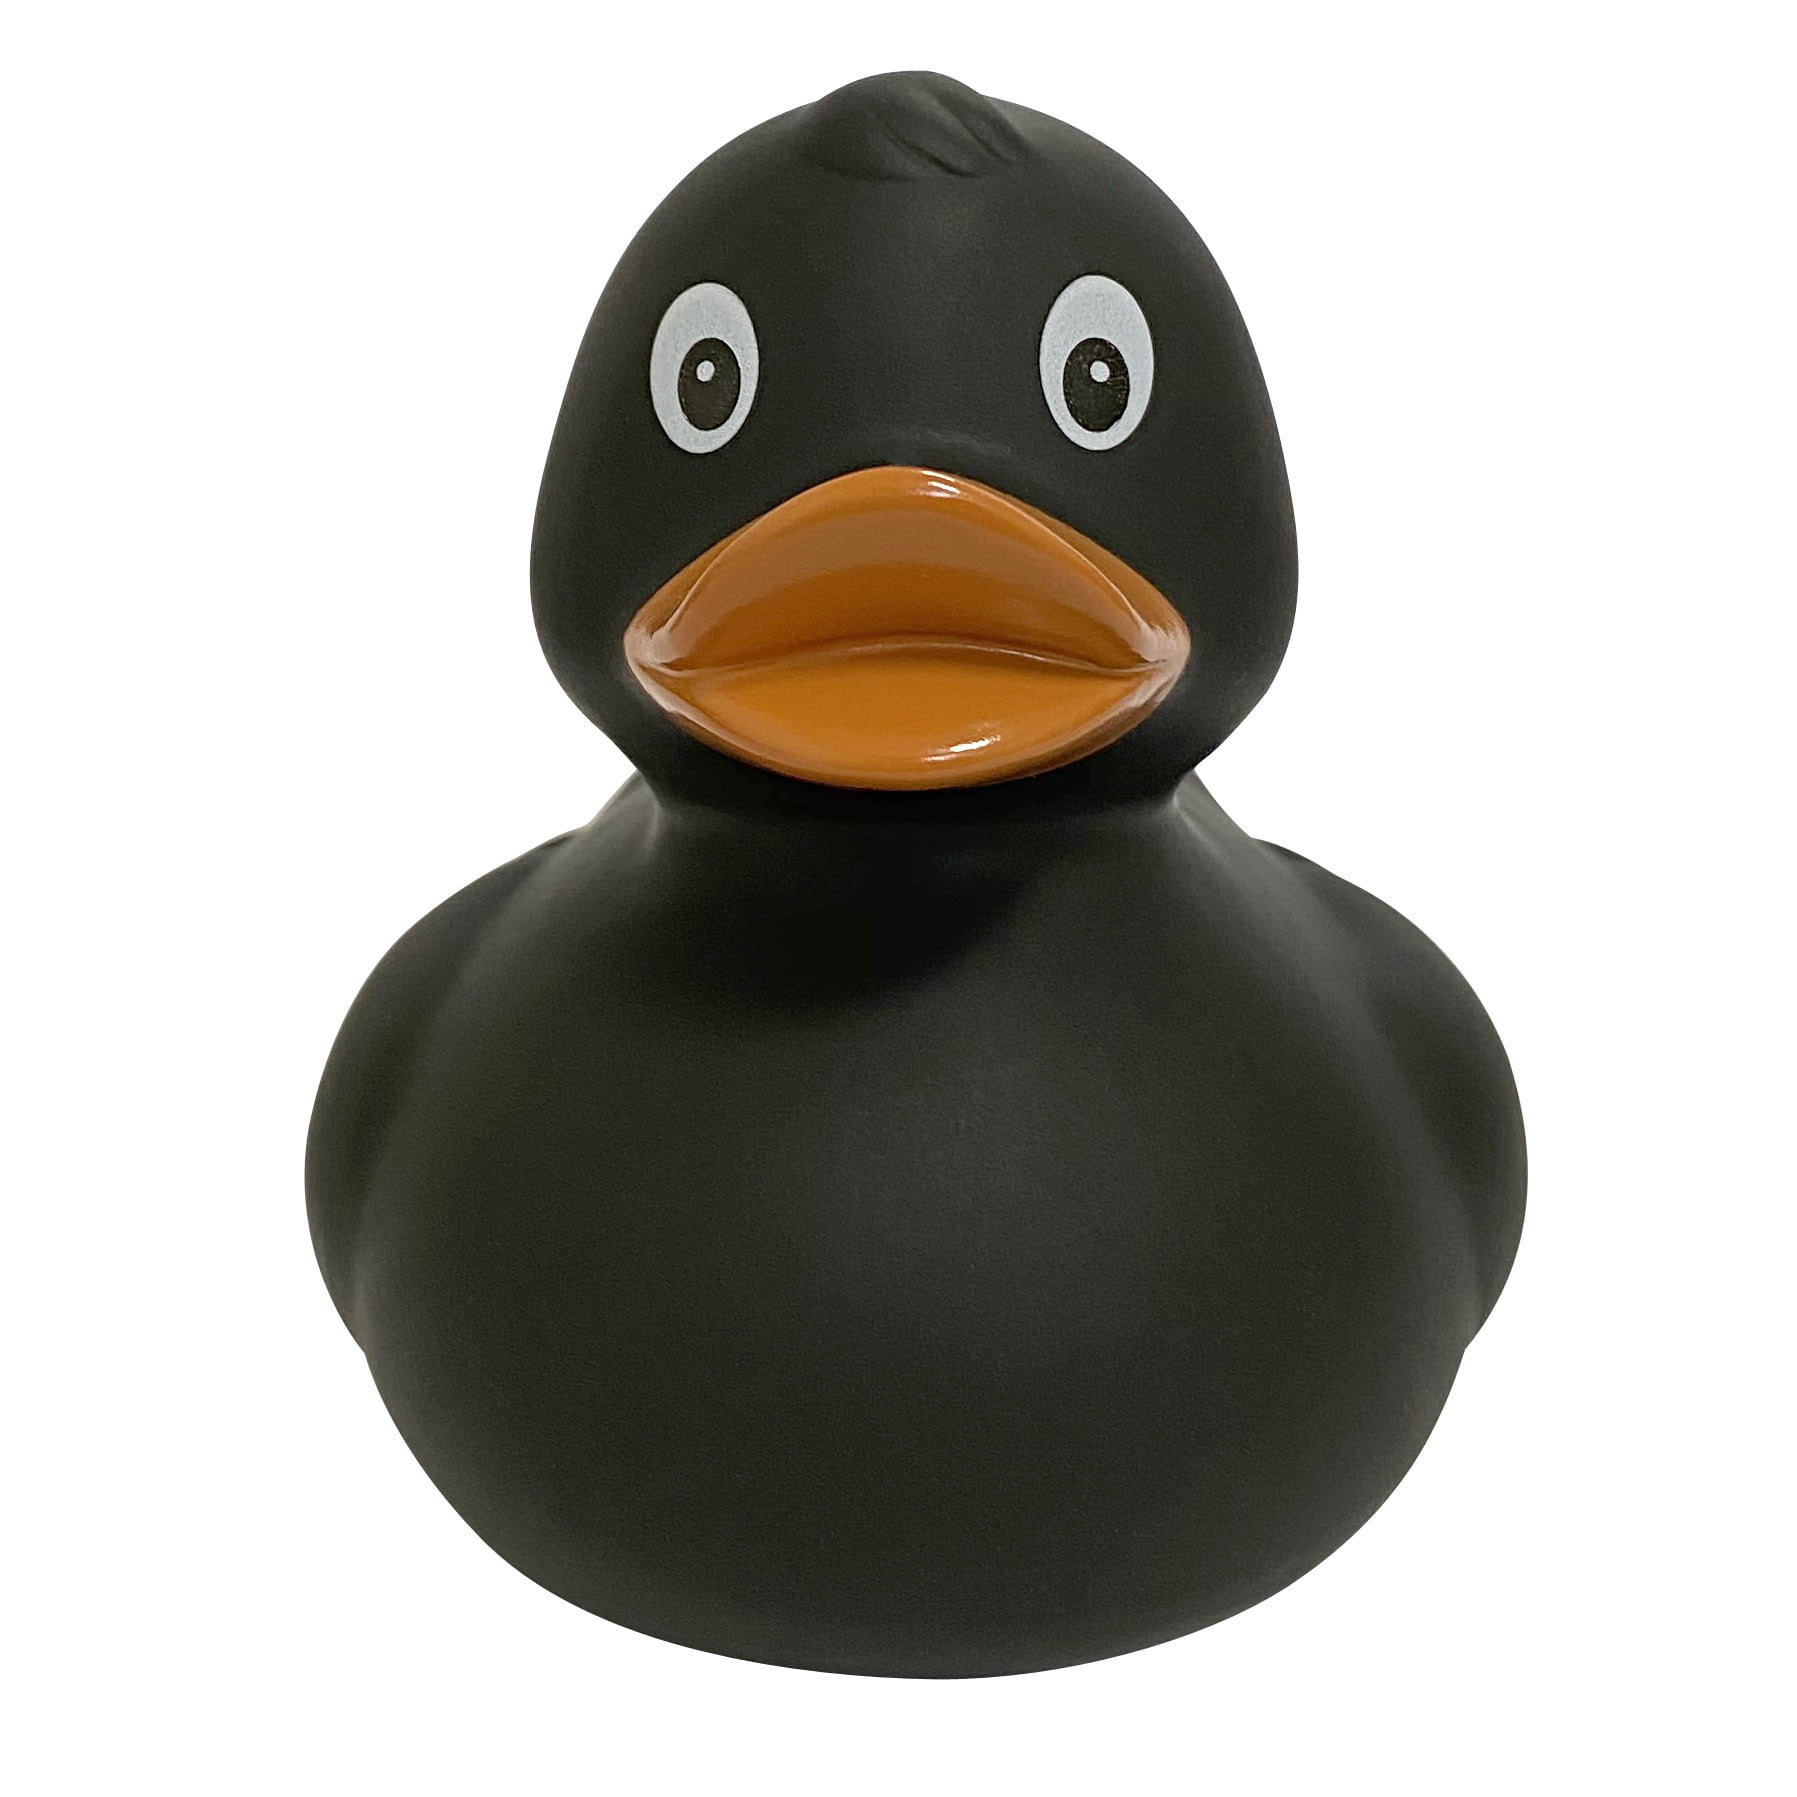 Игрушка для ванной FUNNY DUCKS Черная уточка игрушка для ванны funny ducks сувенир викинг уточка 1982